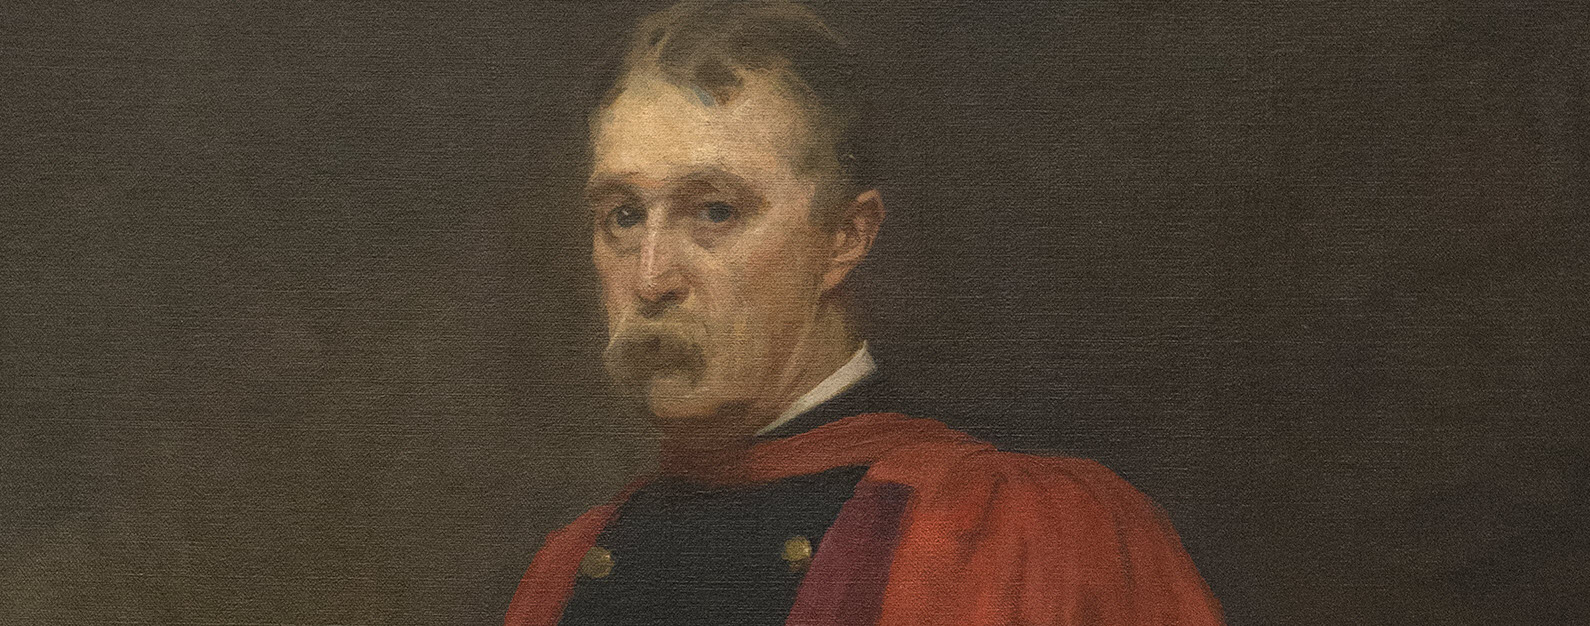 Portrait of John Shaw Billings.